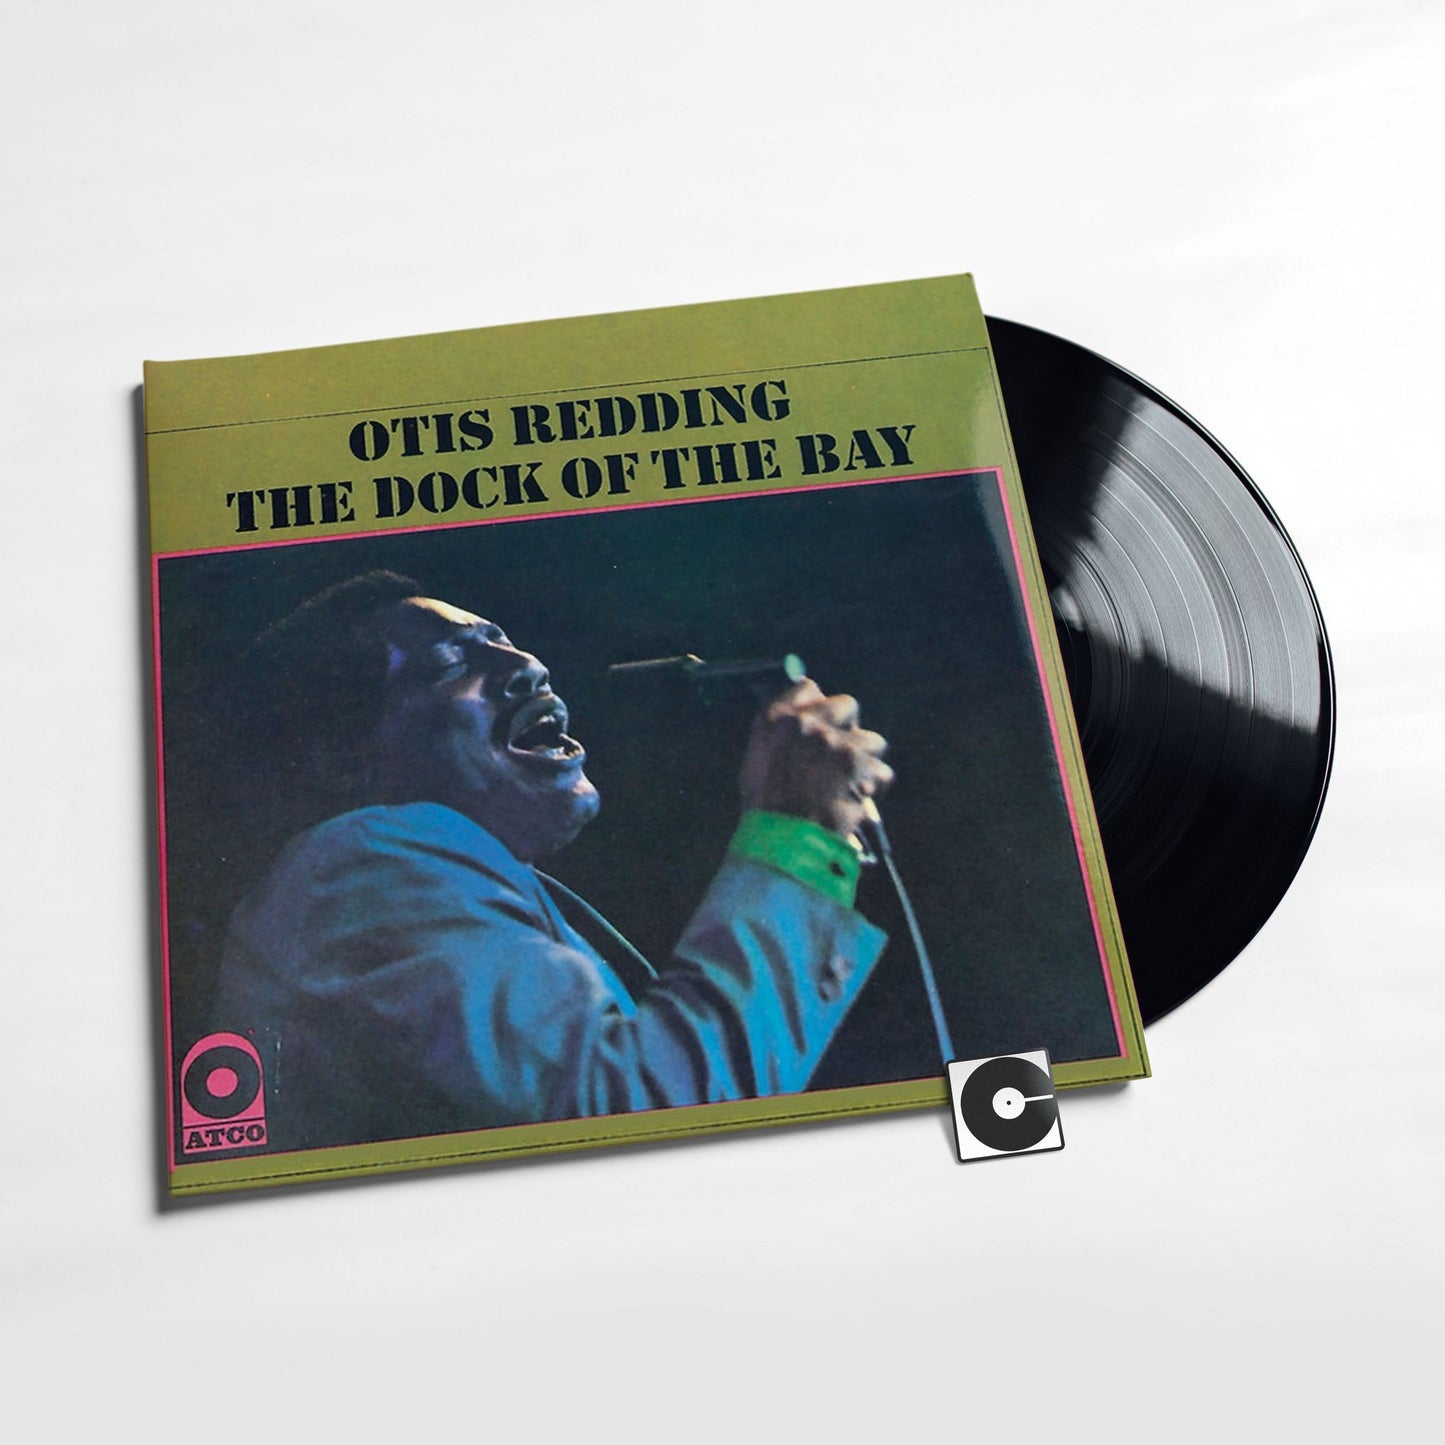 Otis Redding - "The Dock Of The Bay"